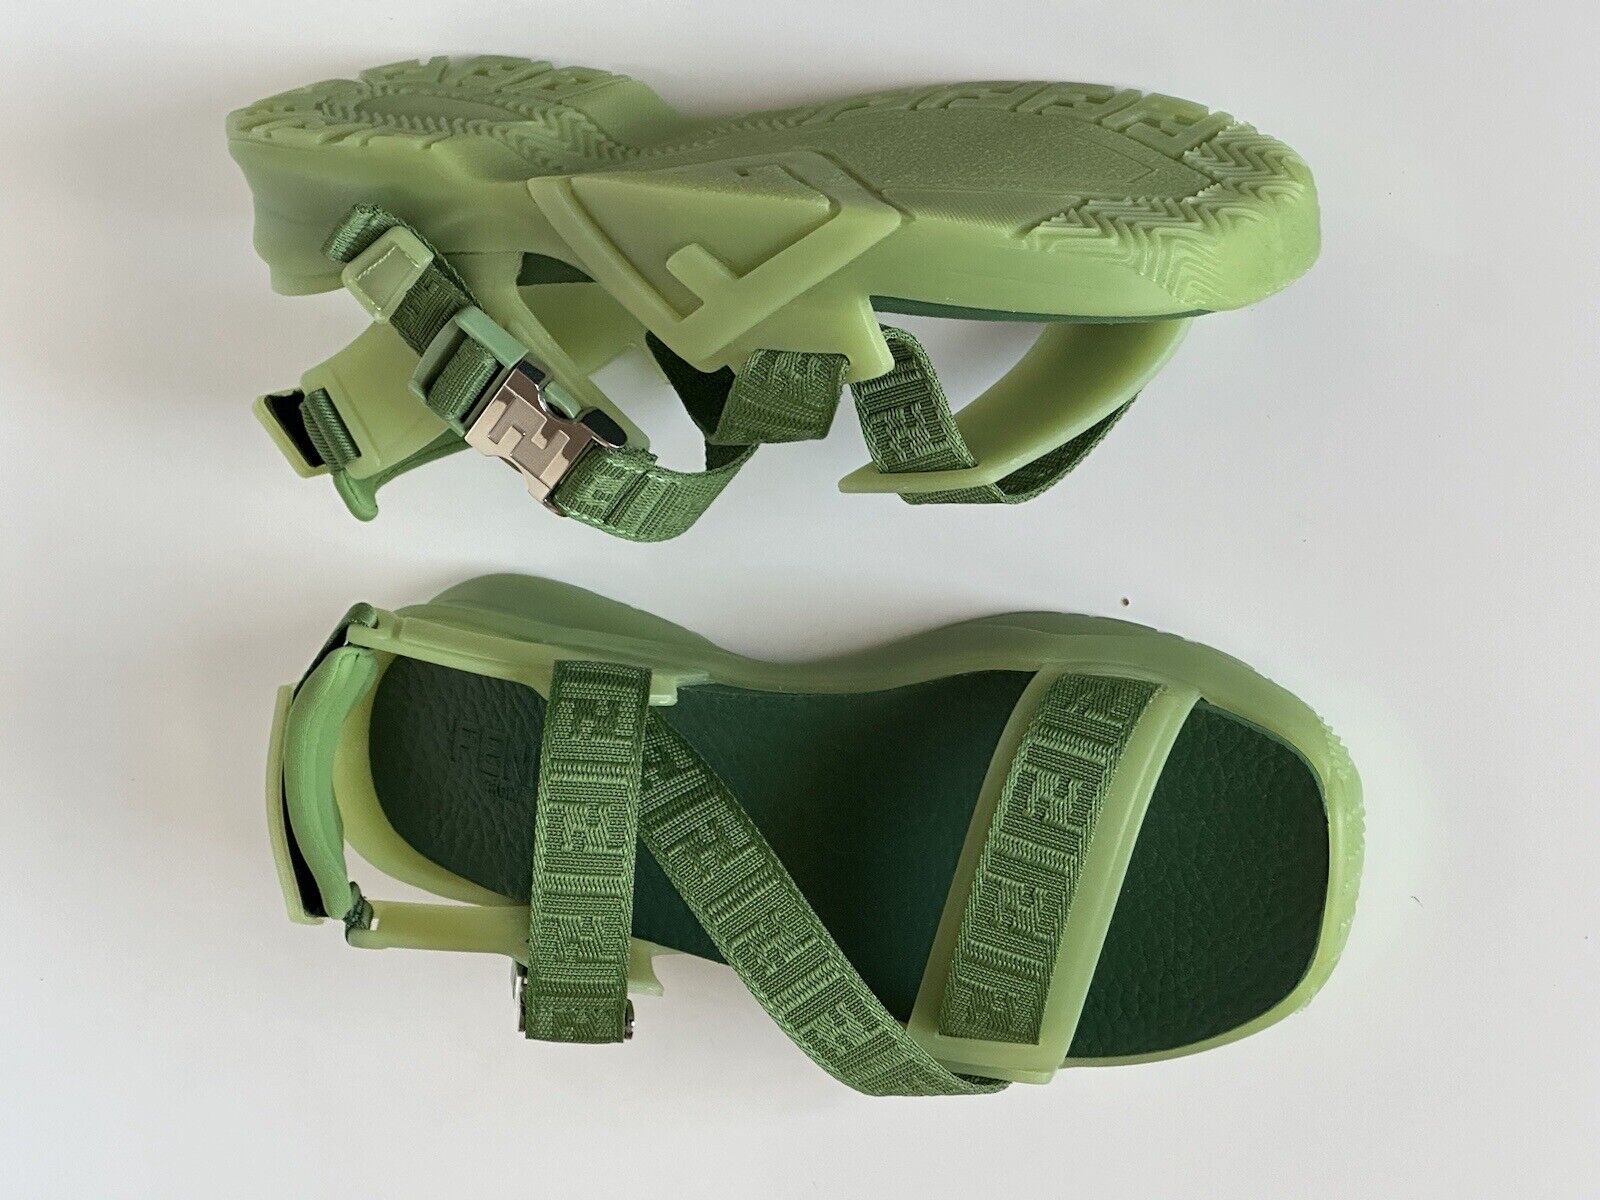 Мужские сандалии Fendi с ремешками Fendi, базилик, 895 долларов США, 11 США/10 Великобритания, Италия 7X1503 